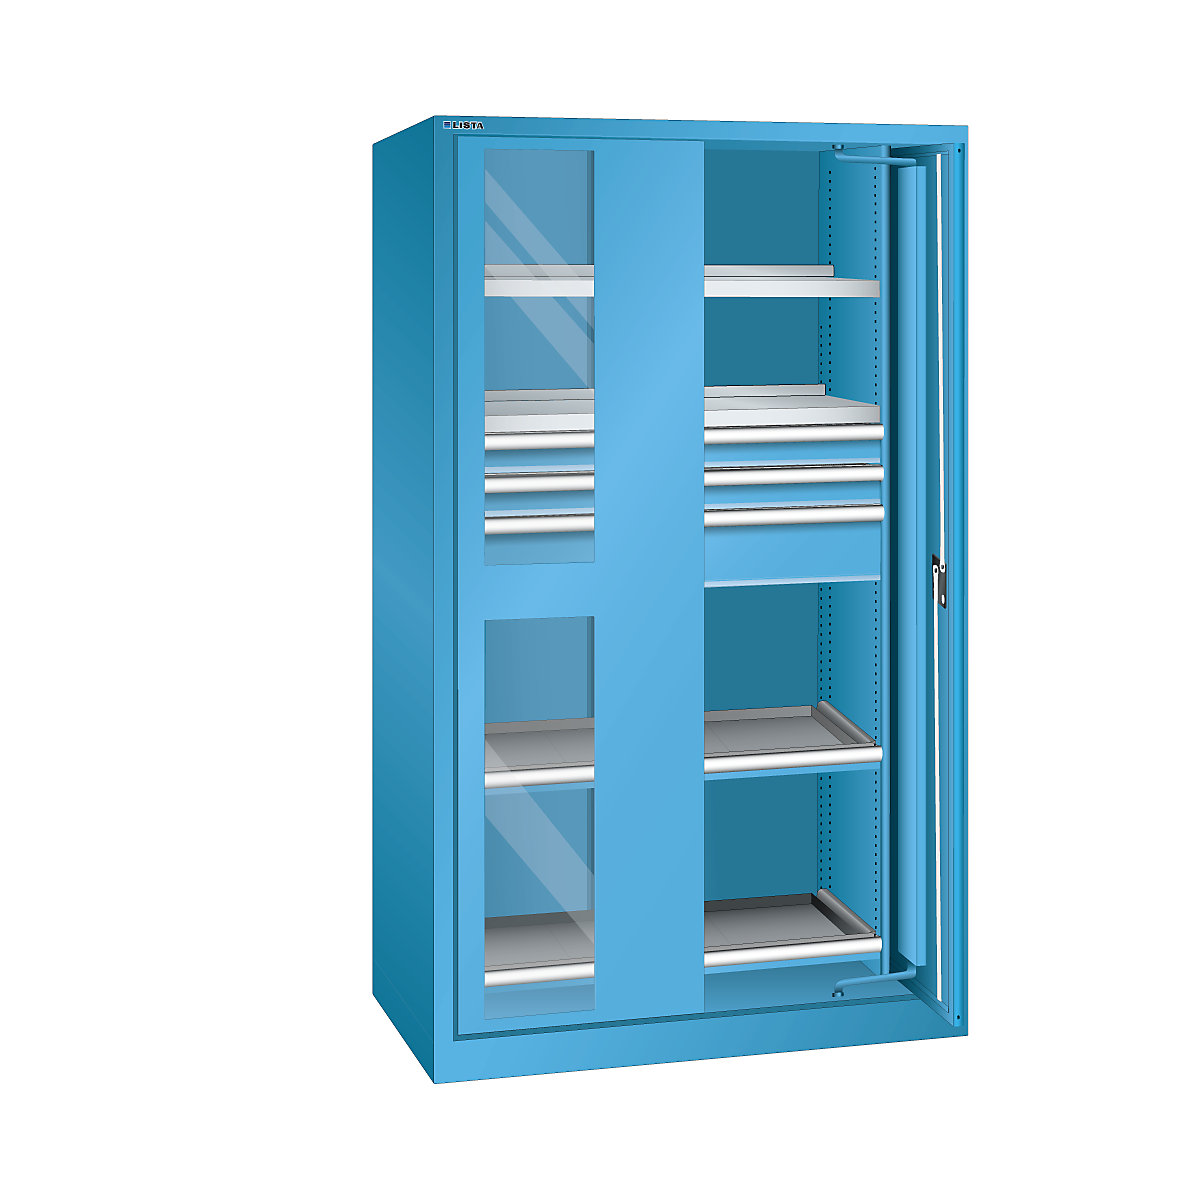 Armadio con ante a scomparsa per carichi pesanti – LISTA, 3 cassetti, 4 ripiani, con ante con finestrella, blu chiaro-8